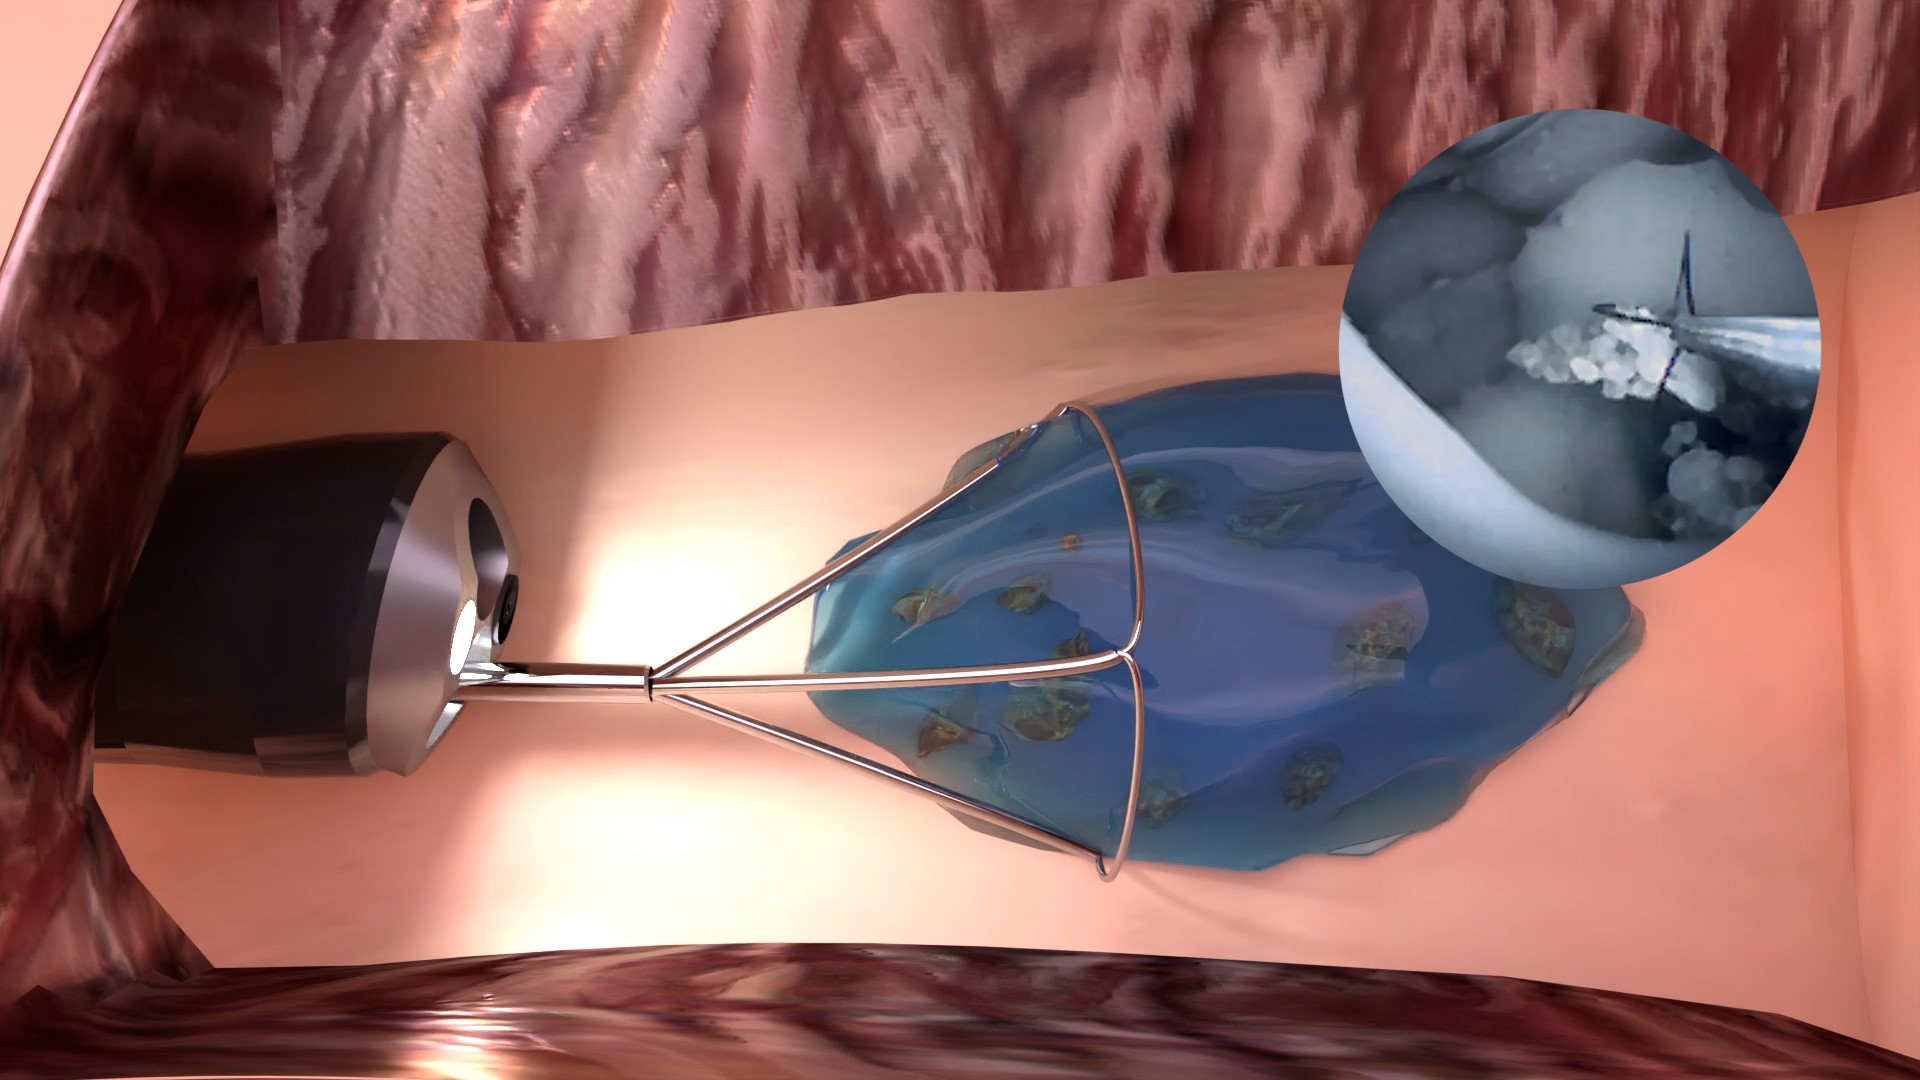 Greifen und Entfernen der in »mediNiK®« eingebetteten Nierensteinfragmente. Große Darstellung: Animation der eingebetteten Nierensteinfragmente. Kleine Darstellung im Kreis rechts oben: Sicht des operierenden Urologen durch die Kamera des Endoskops.